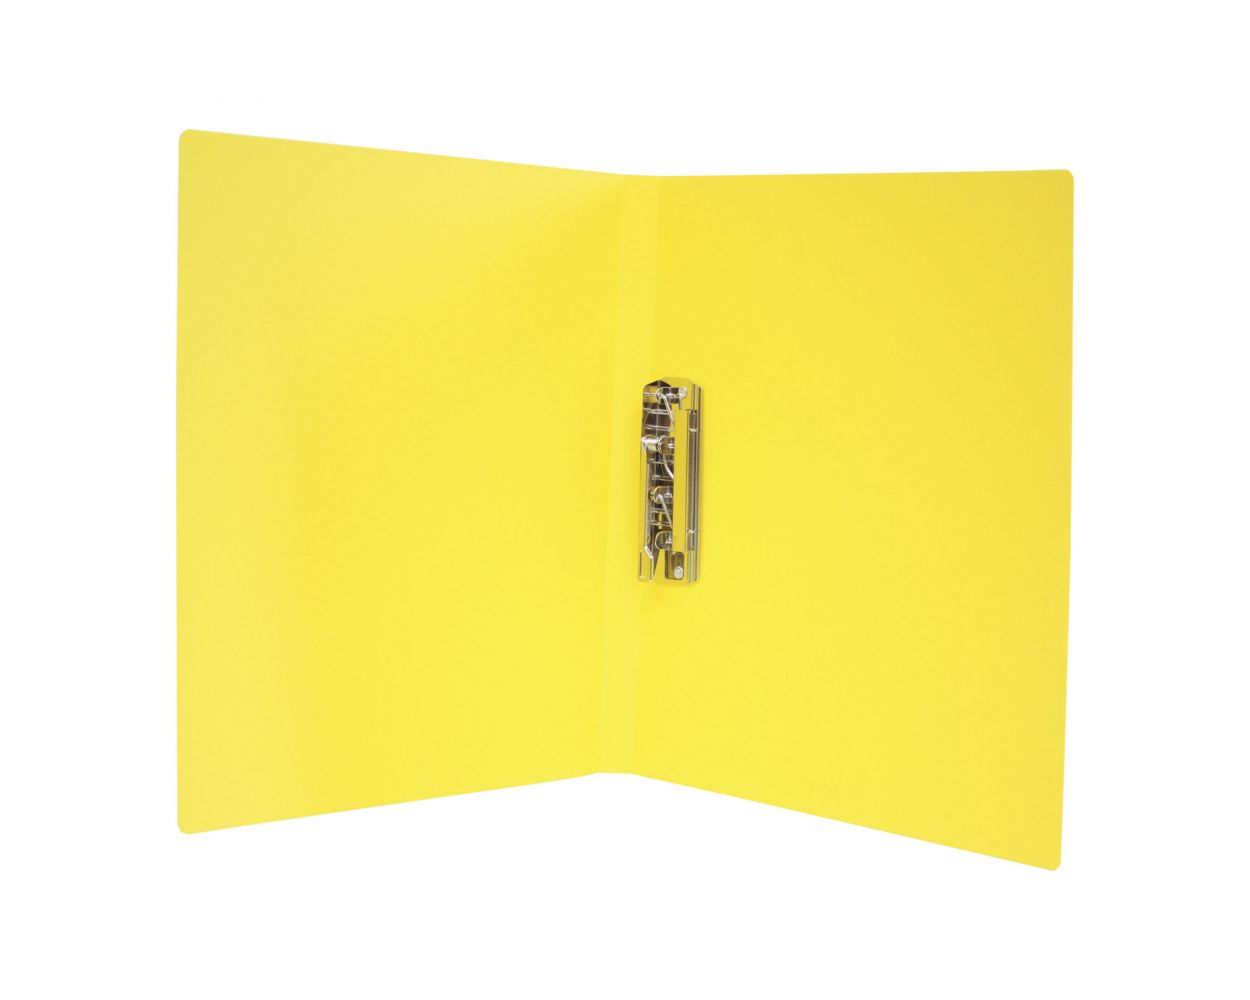 Carpeta con Oxford, tamaño carta, color amarillo, para 60 hojas, metálica para sujeción de